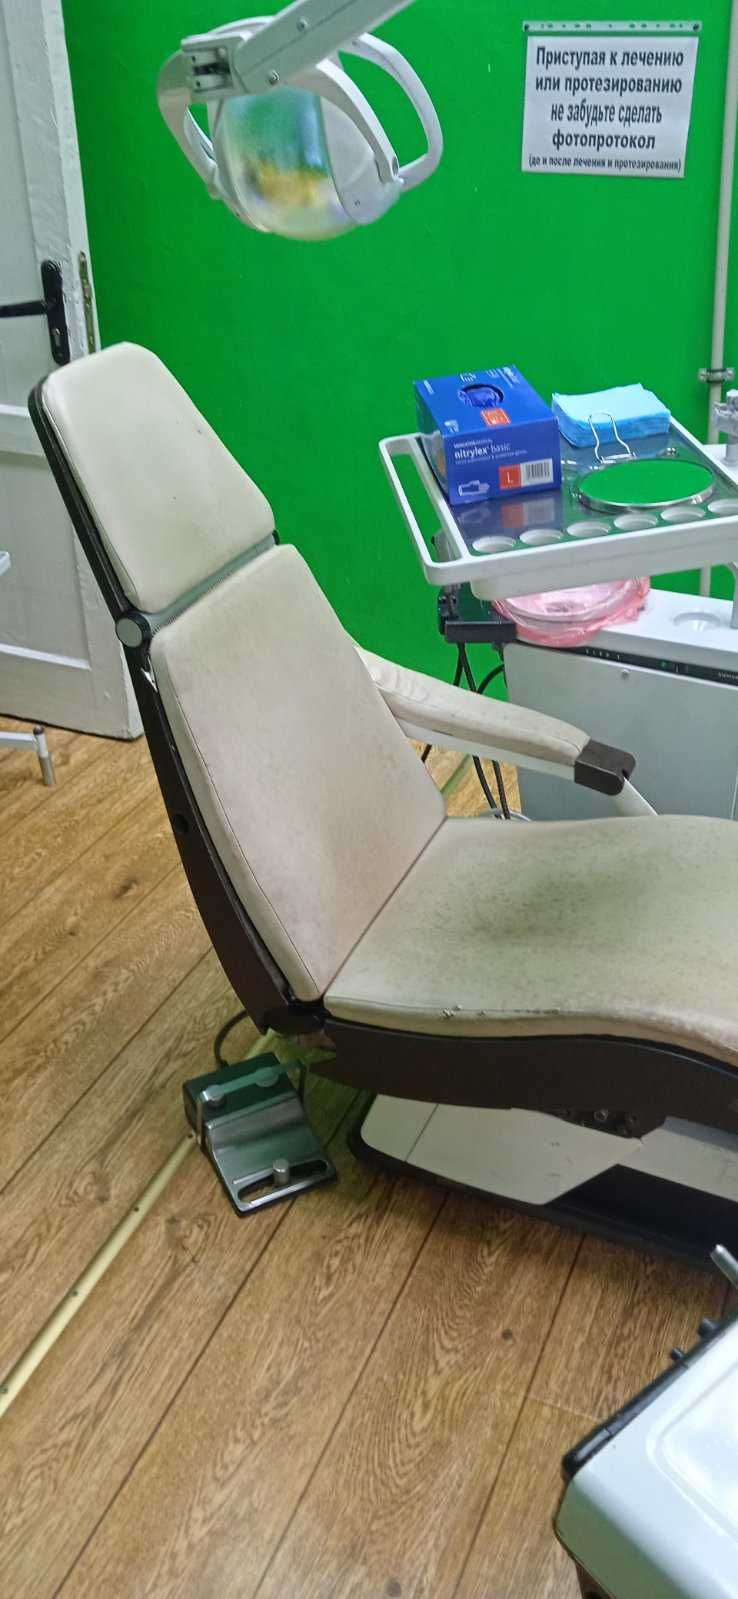 Продам крісло стоматологічне. В робочому стані.